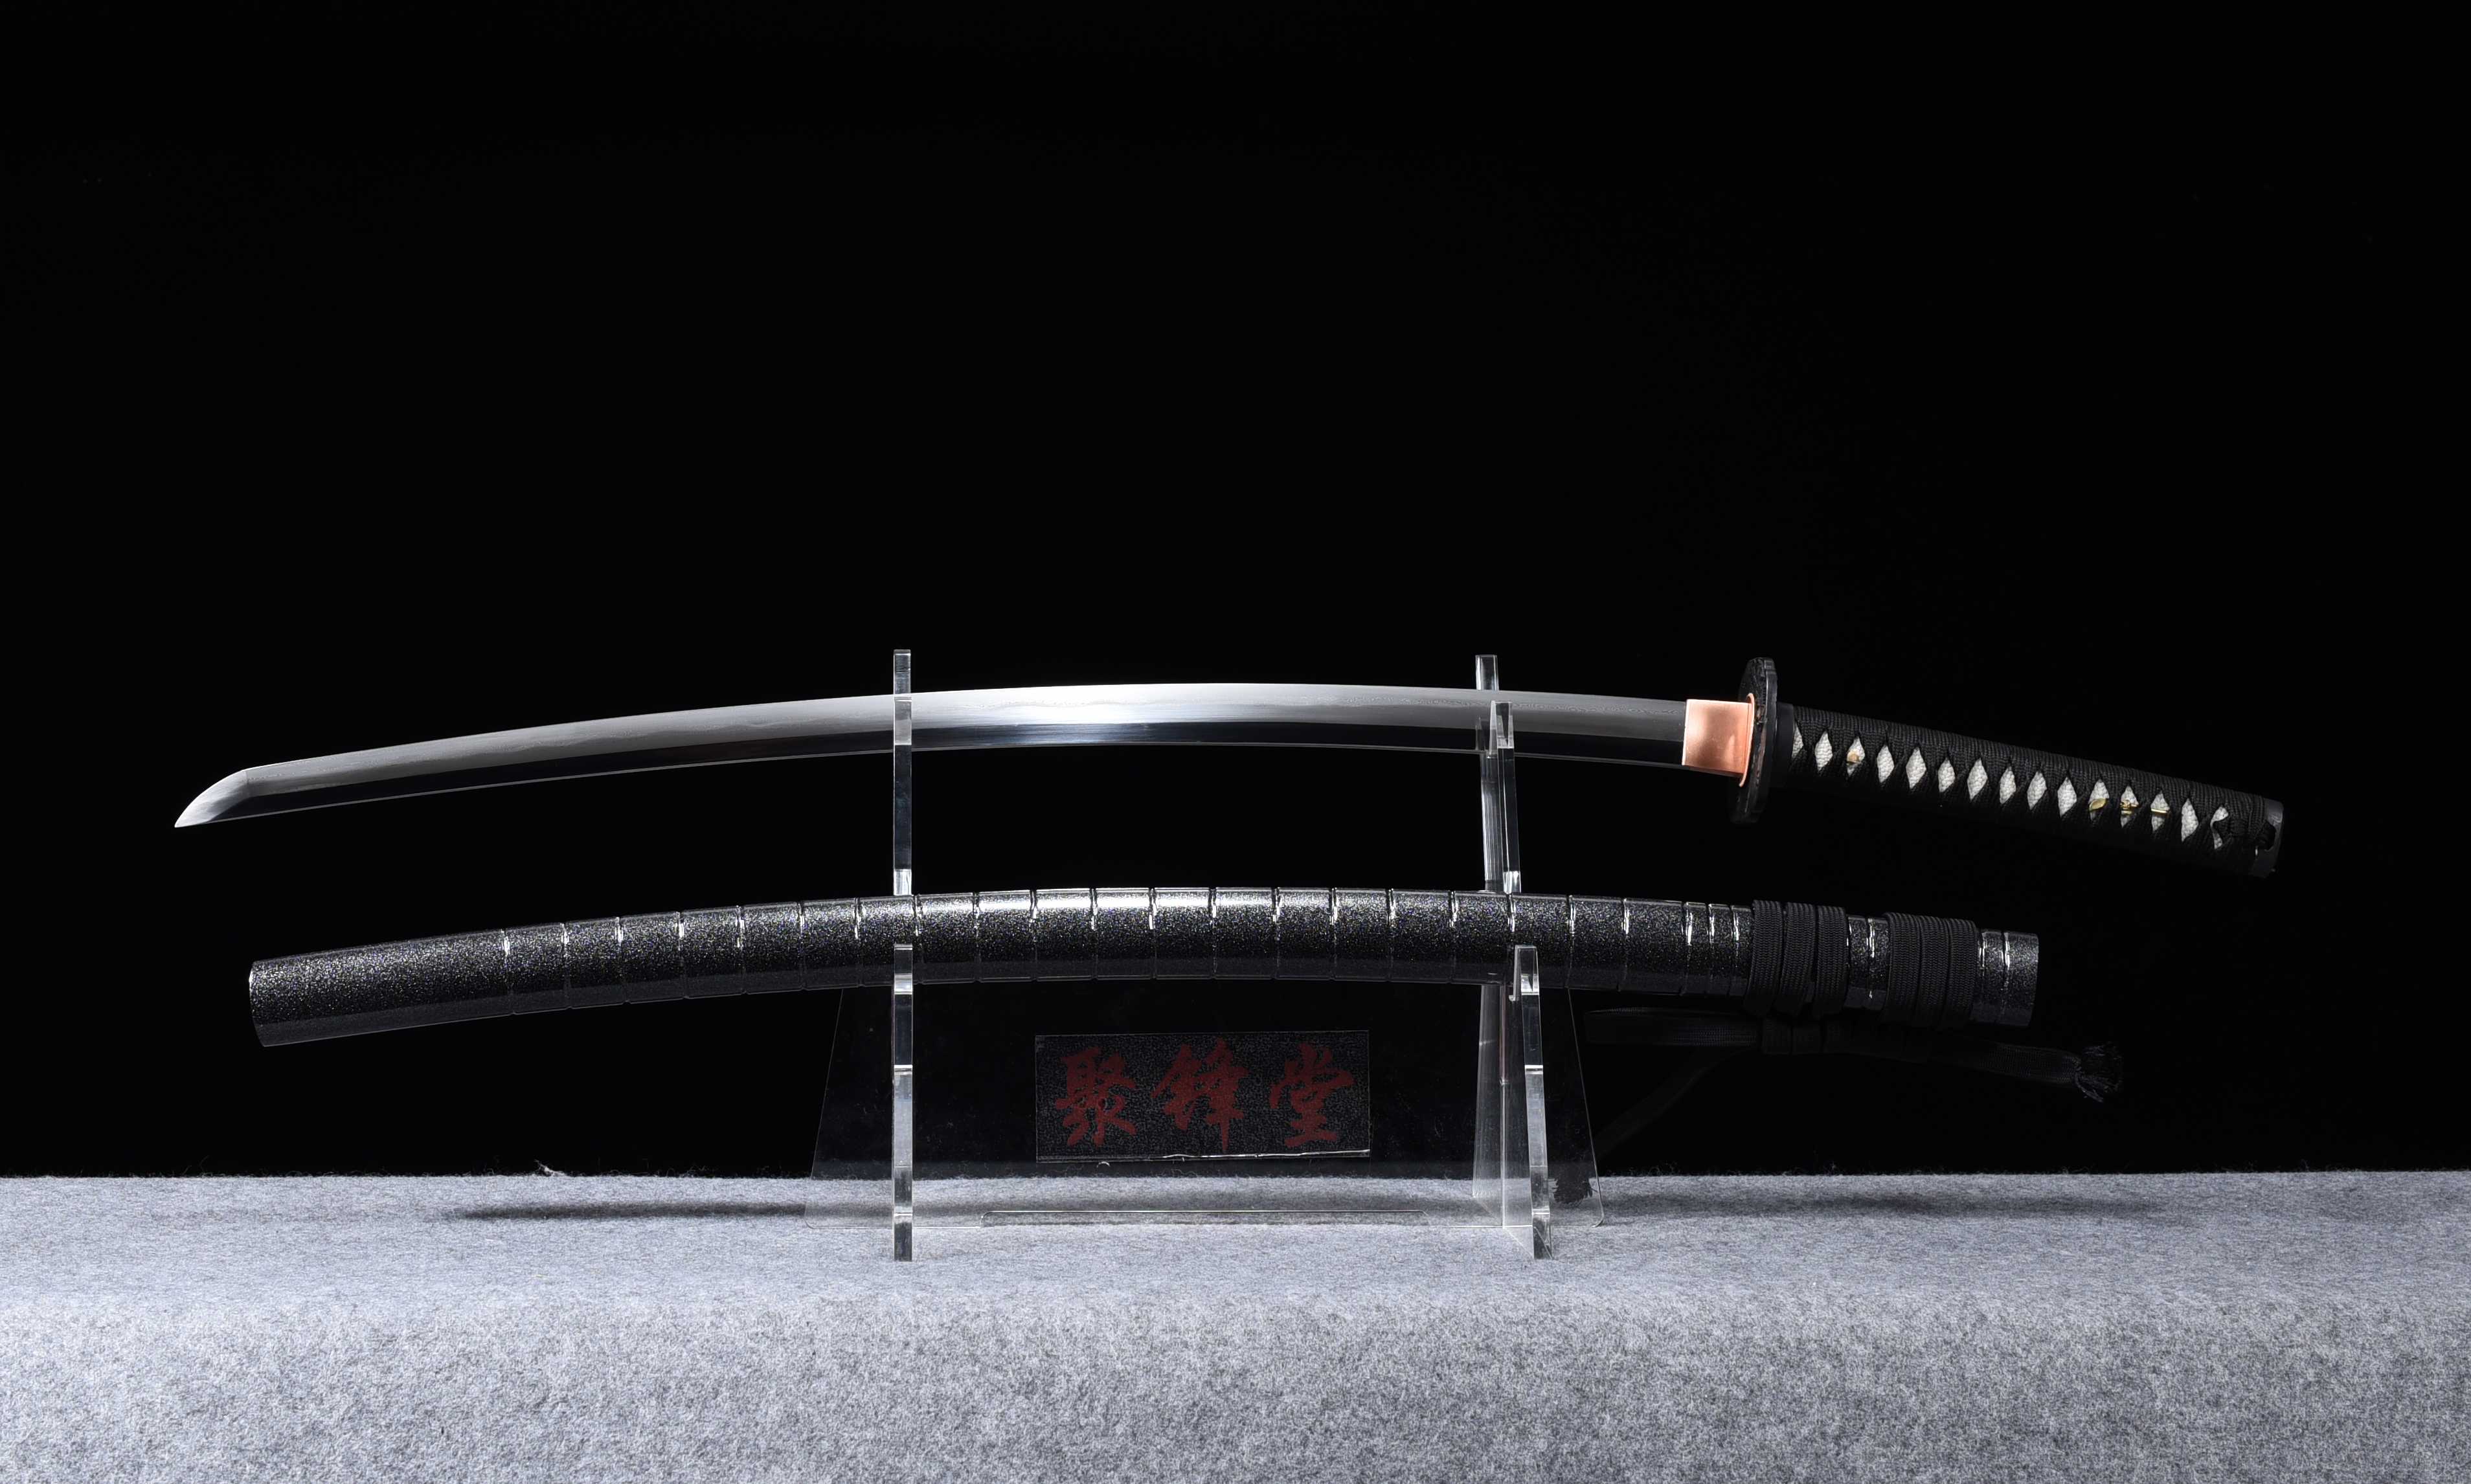 新长曾弥虎彻 - 聚锋堂美术刀剑-名刀复刻,日本武士刀,太刀,唐刀,汉剑